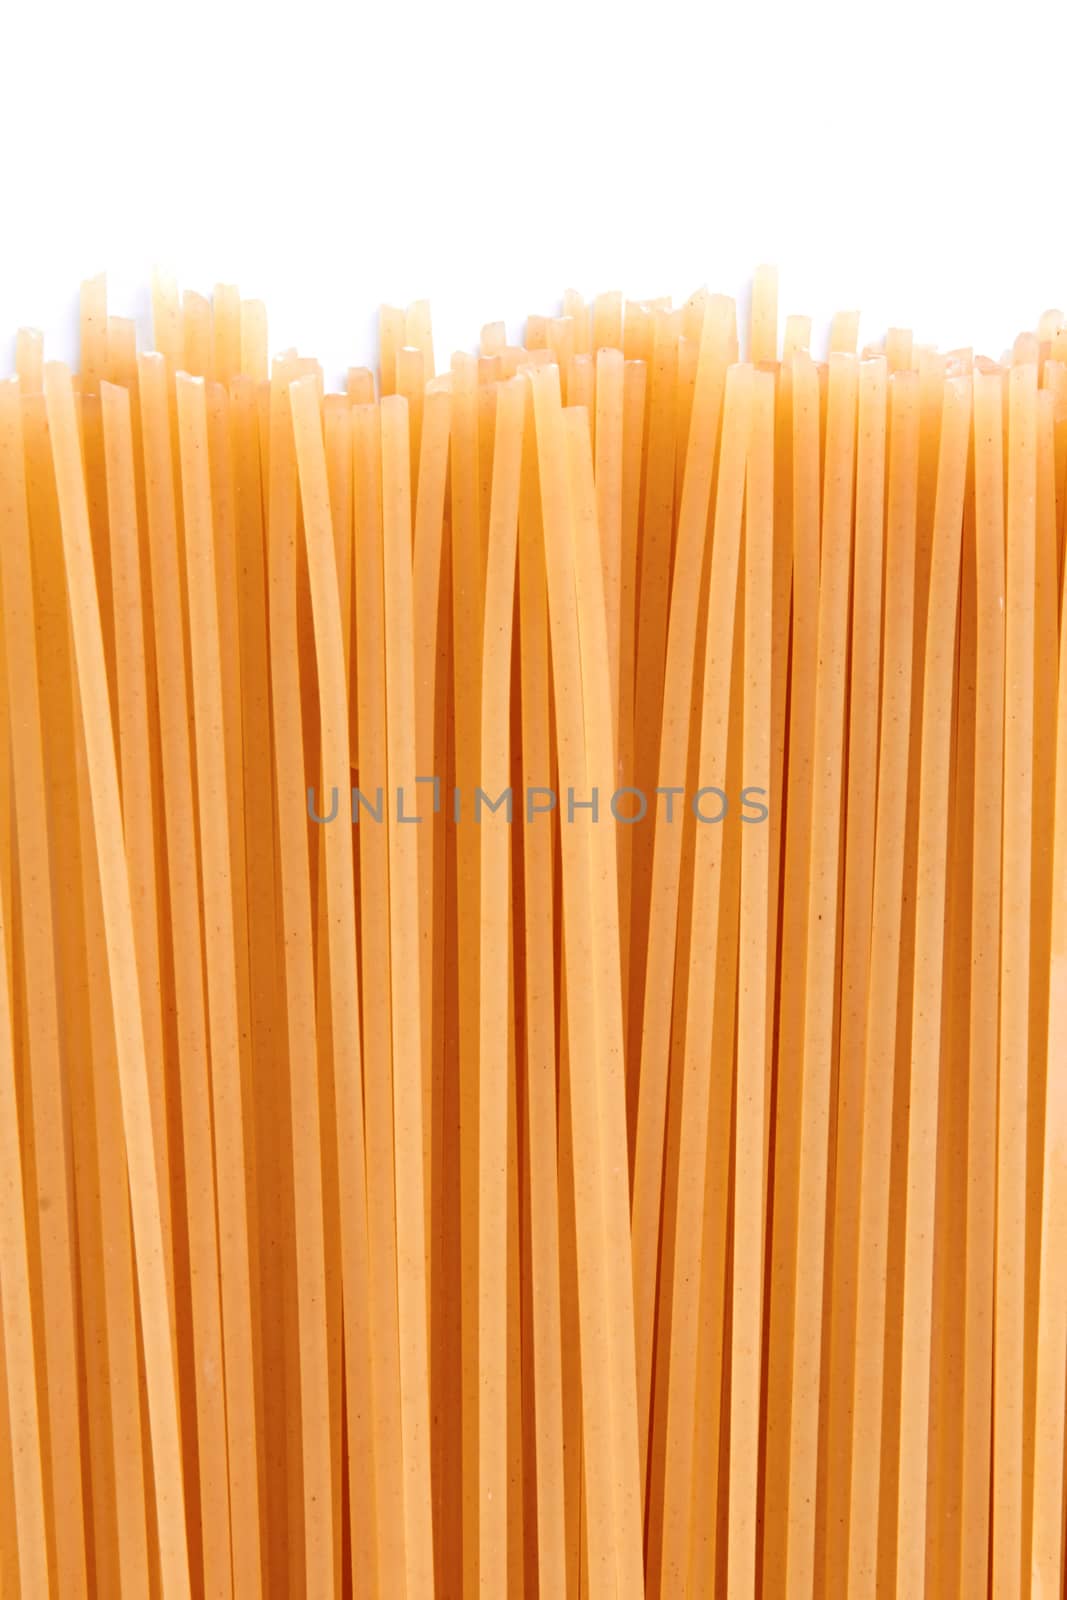 raw spaghetti by pioneer111